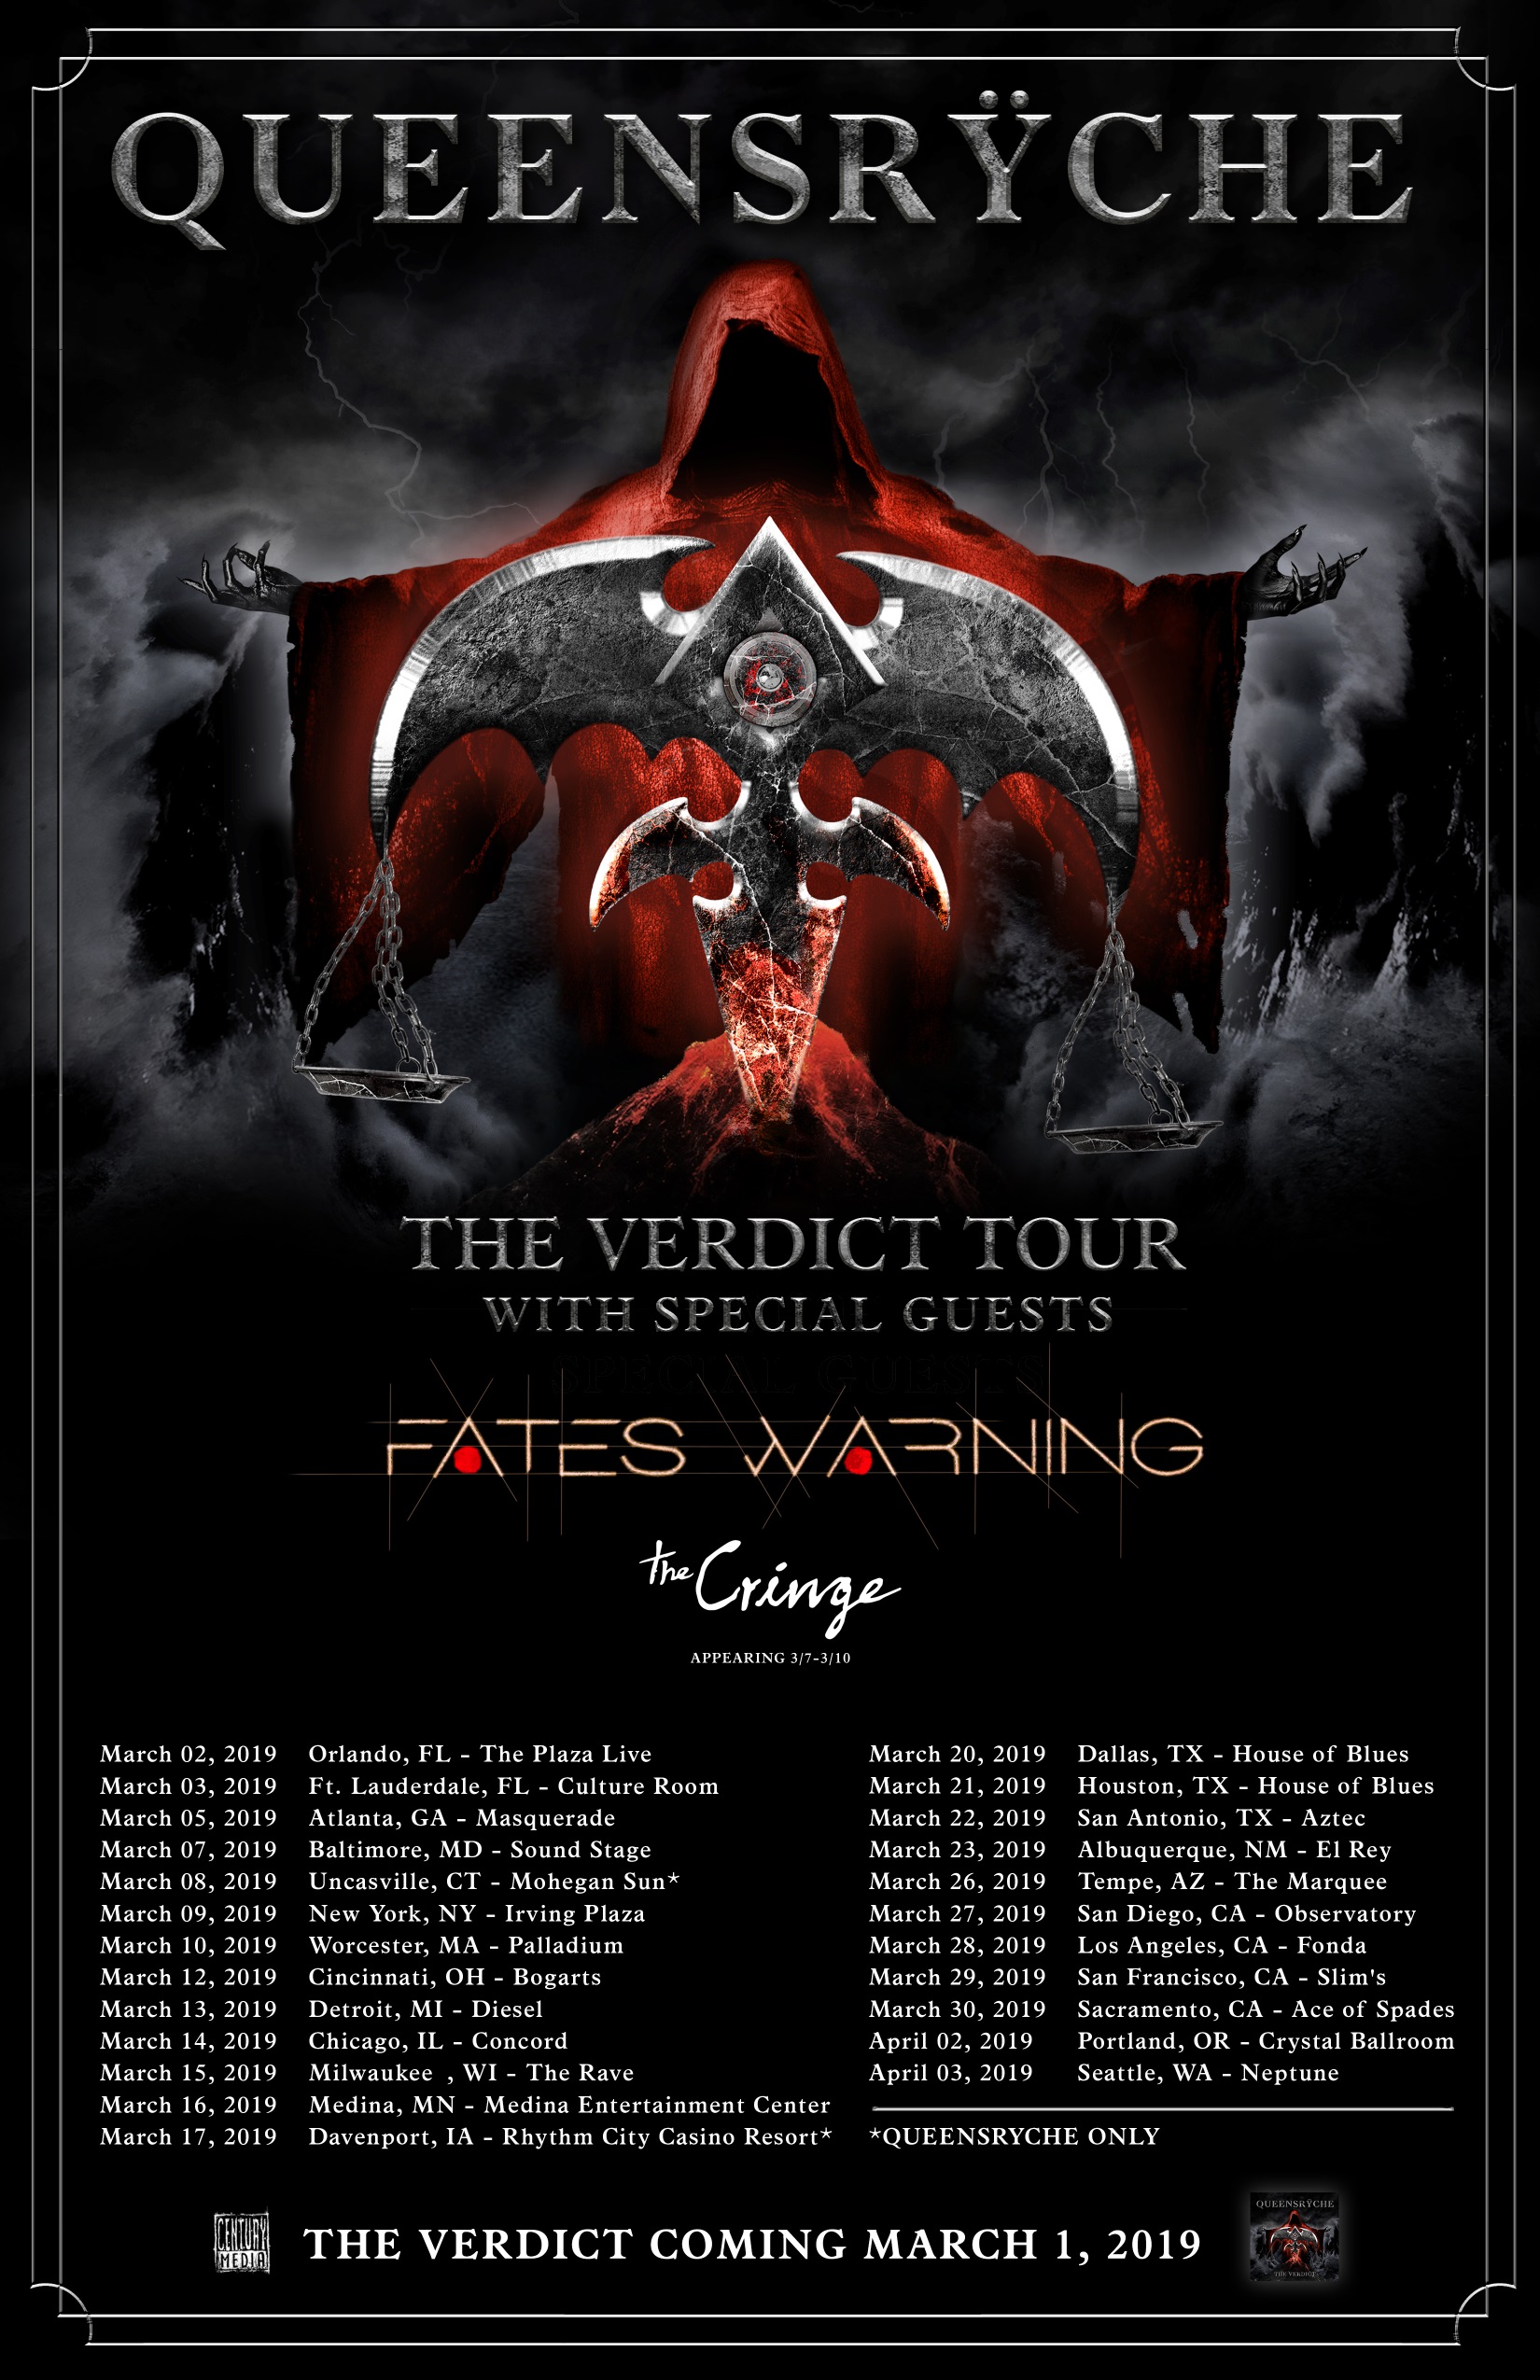 fates warning tour dates